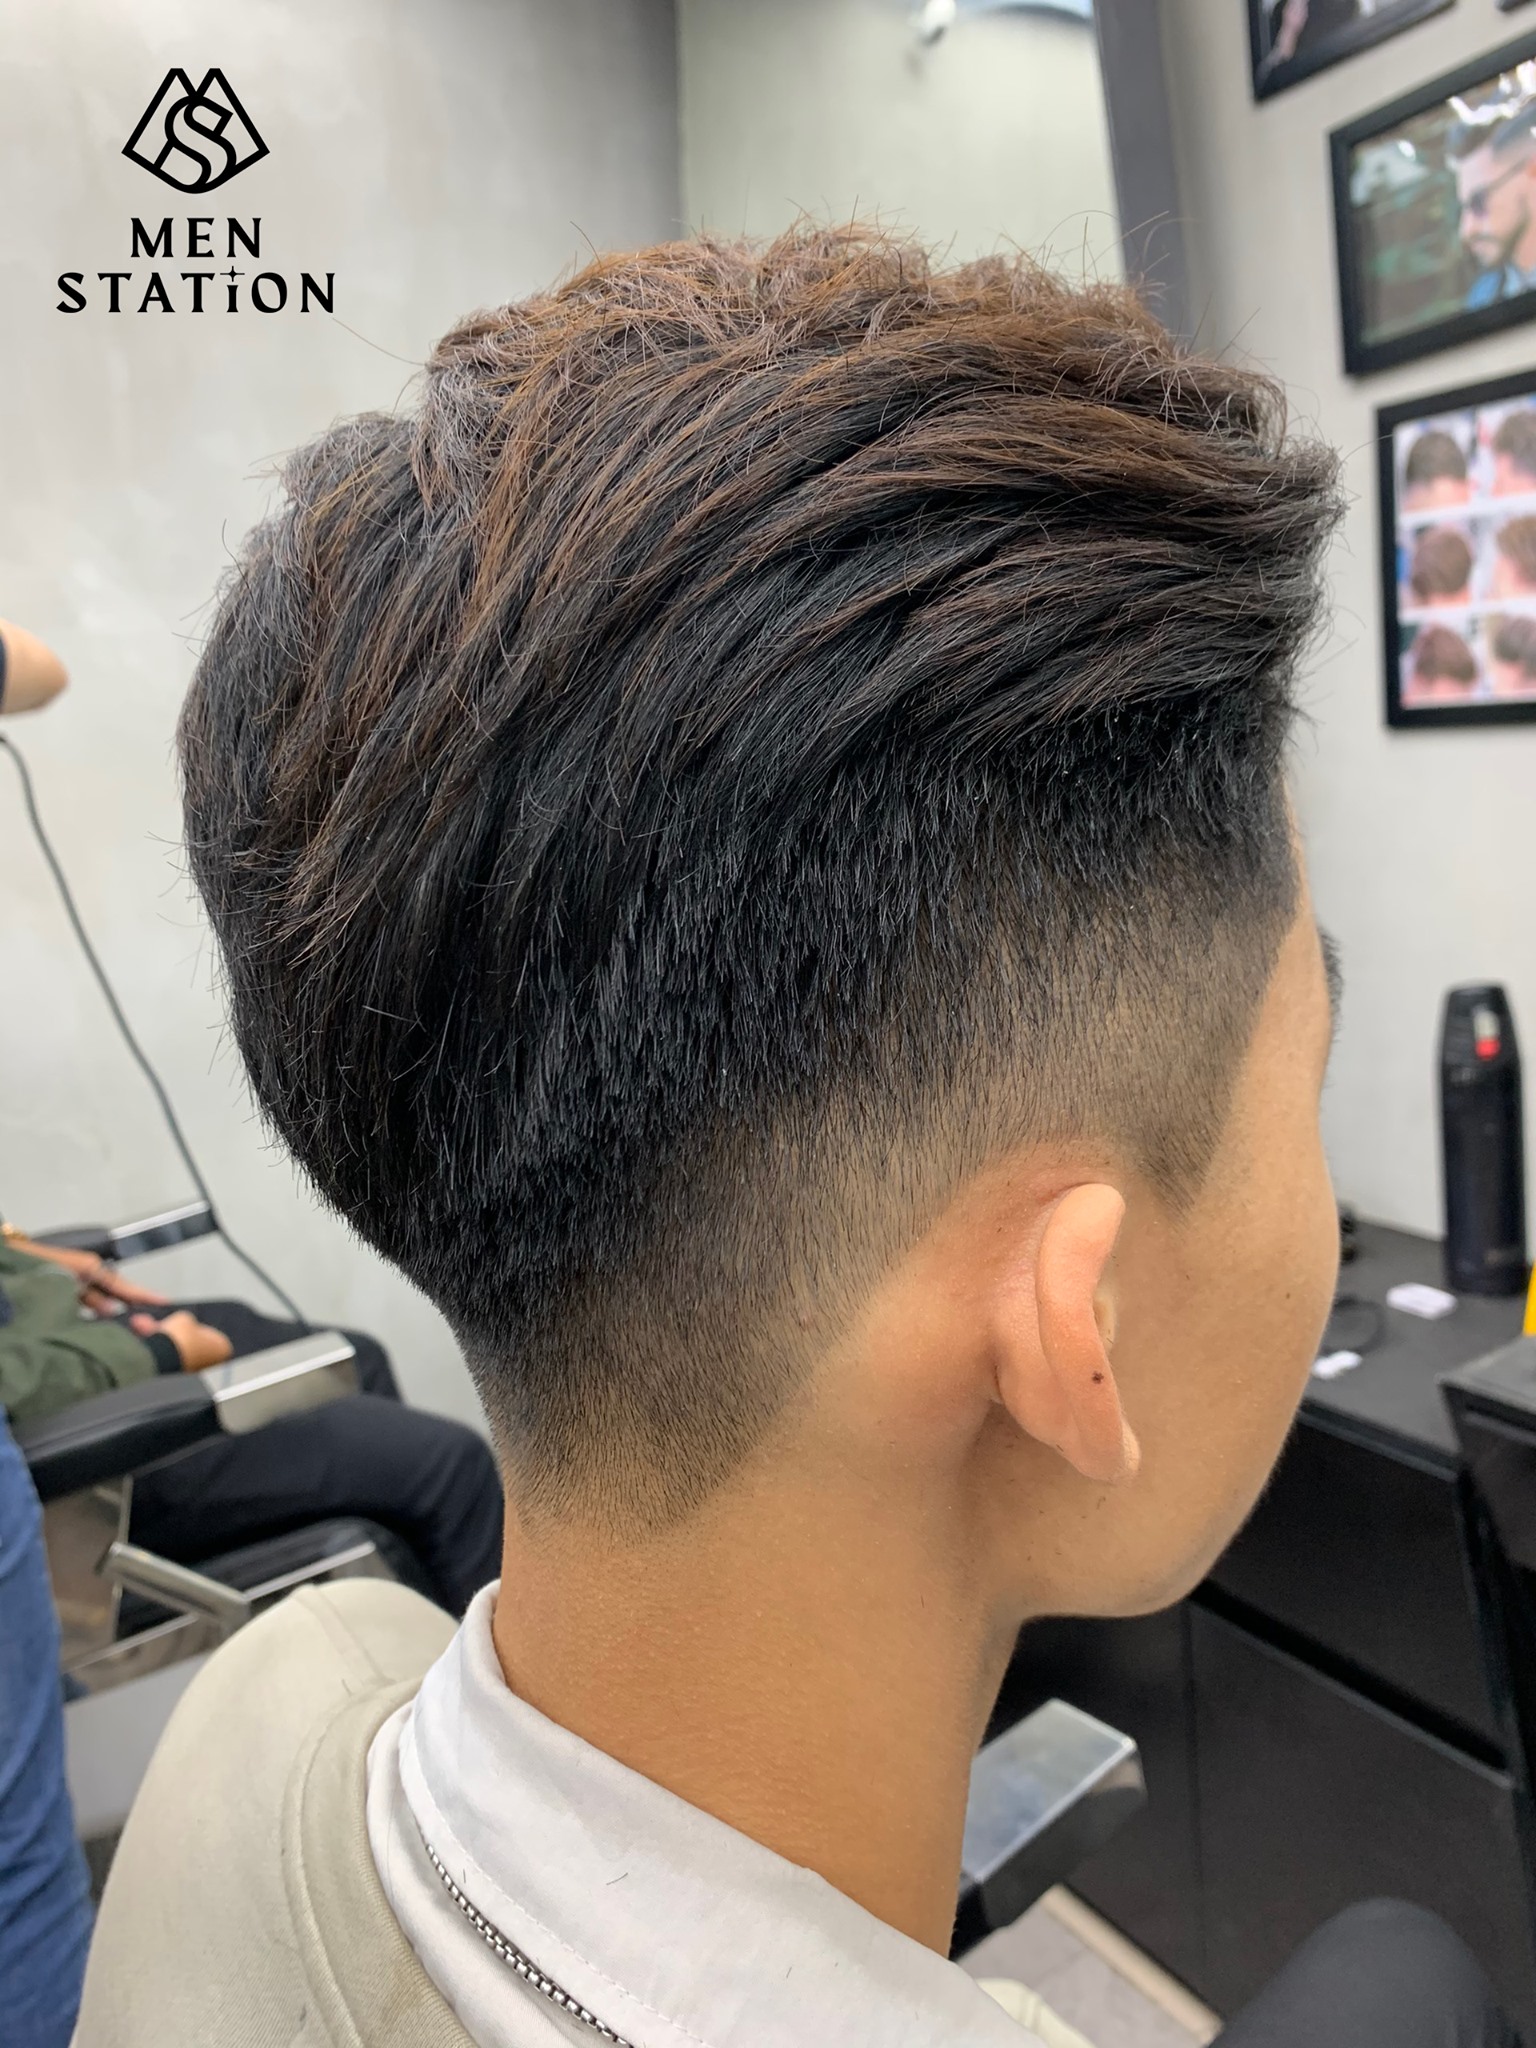 Top 10 tiệm cắt tóc nam đẹp uy tín tại Quận Gò Vấp  TP HCM 2022   Top10CongTy